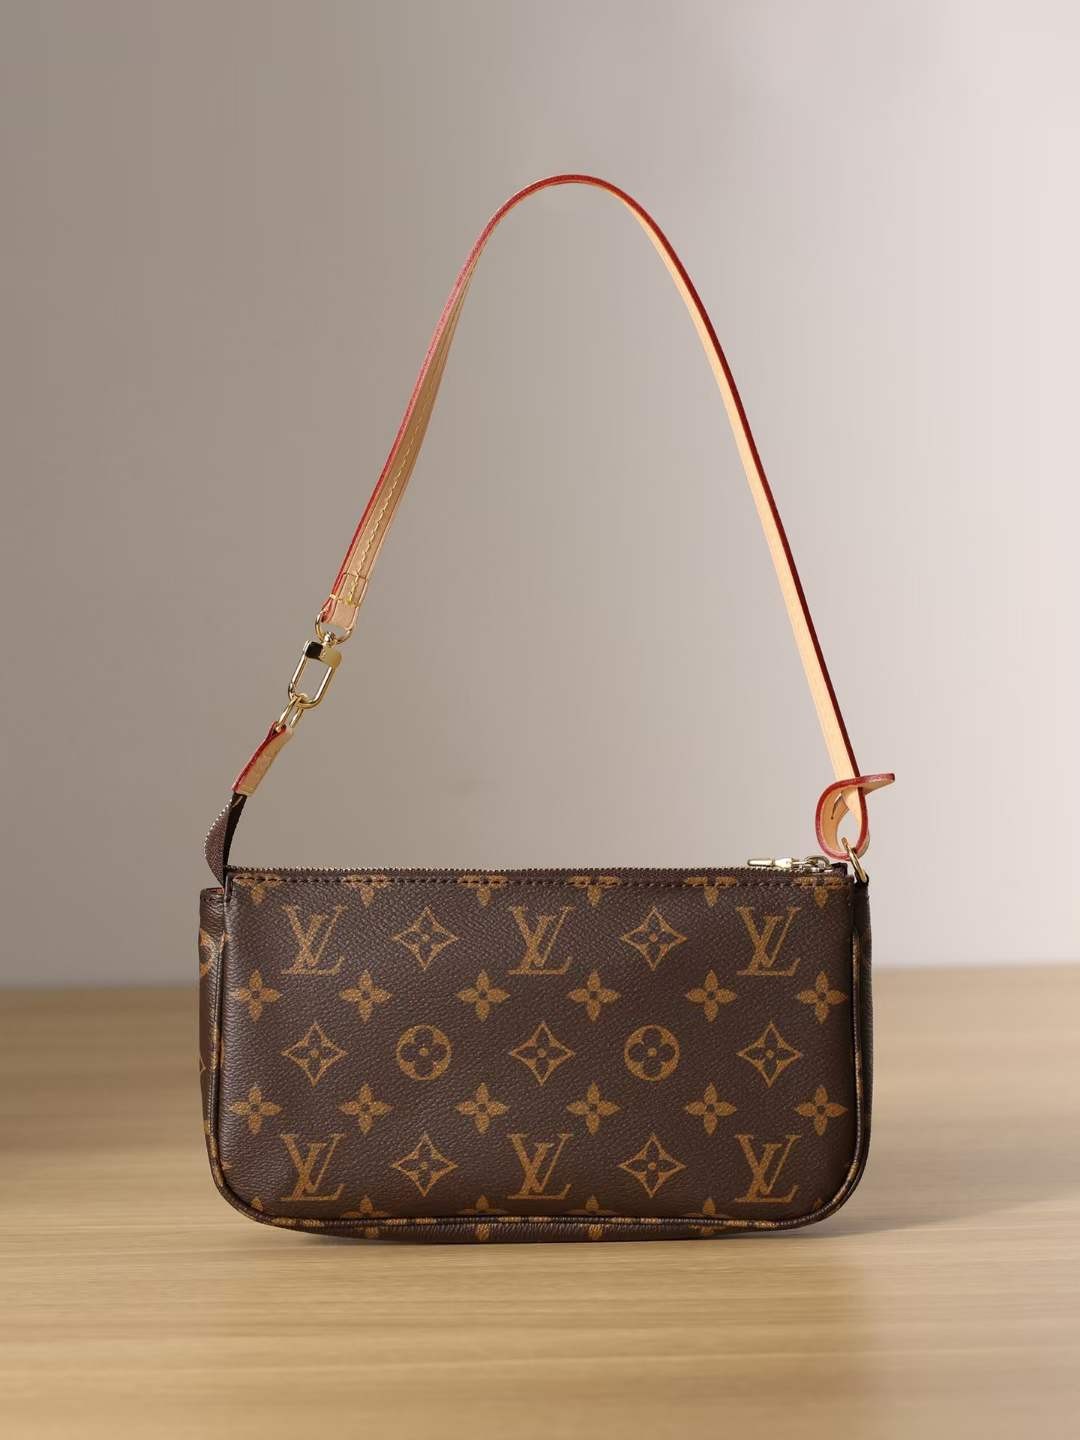 Louis Vuitton M40712 Pochette Accessoires top replica bag 23.5 x 13.5 x 4 cm (2022 Latest)-Best Quality Fake designer Bag Review, Replica designer bag ru